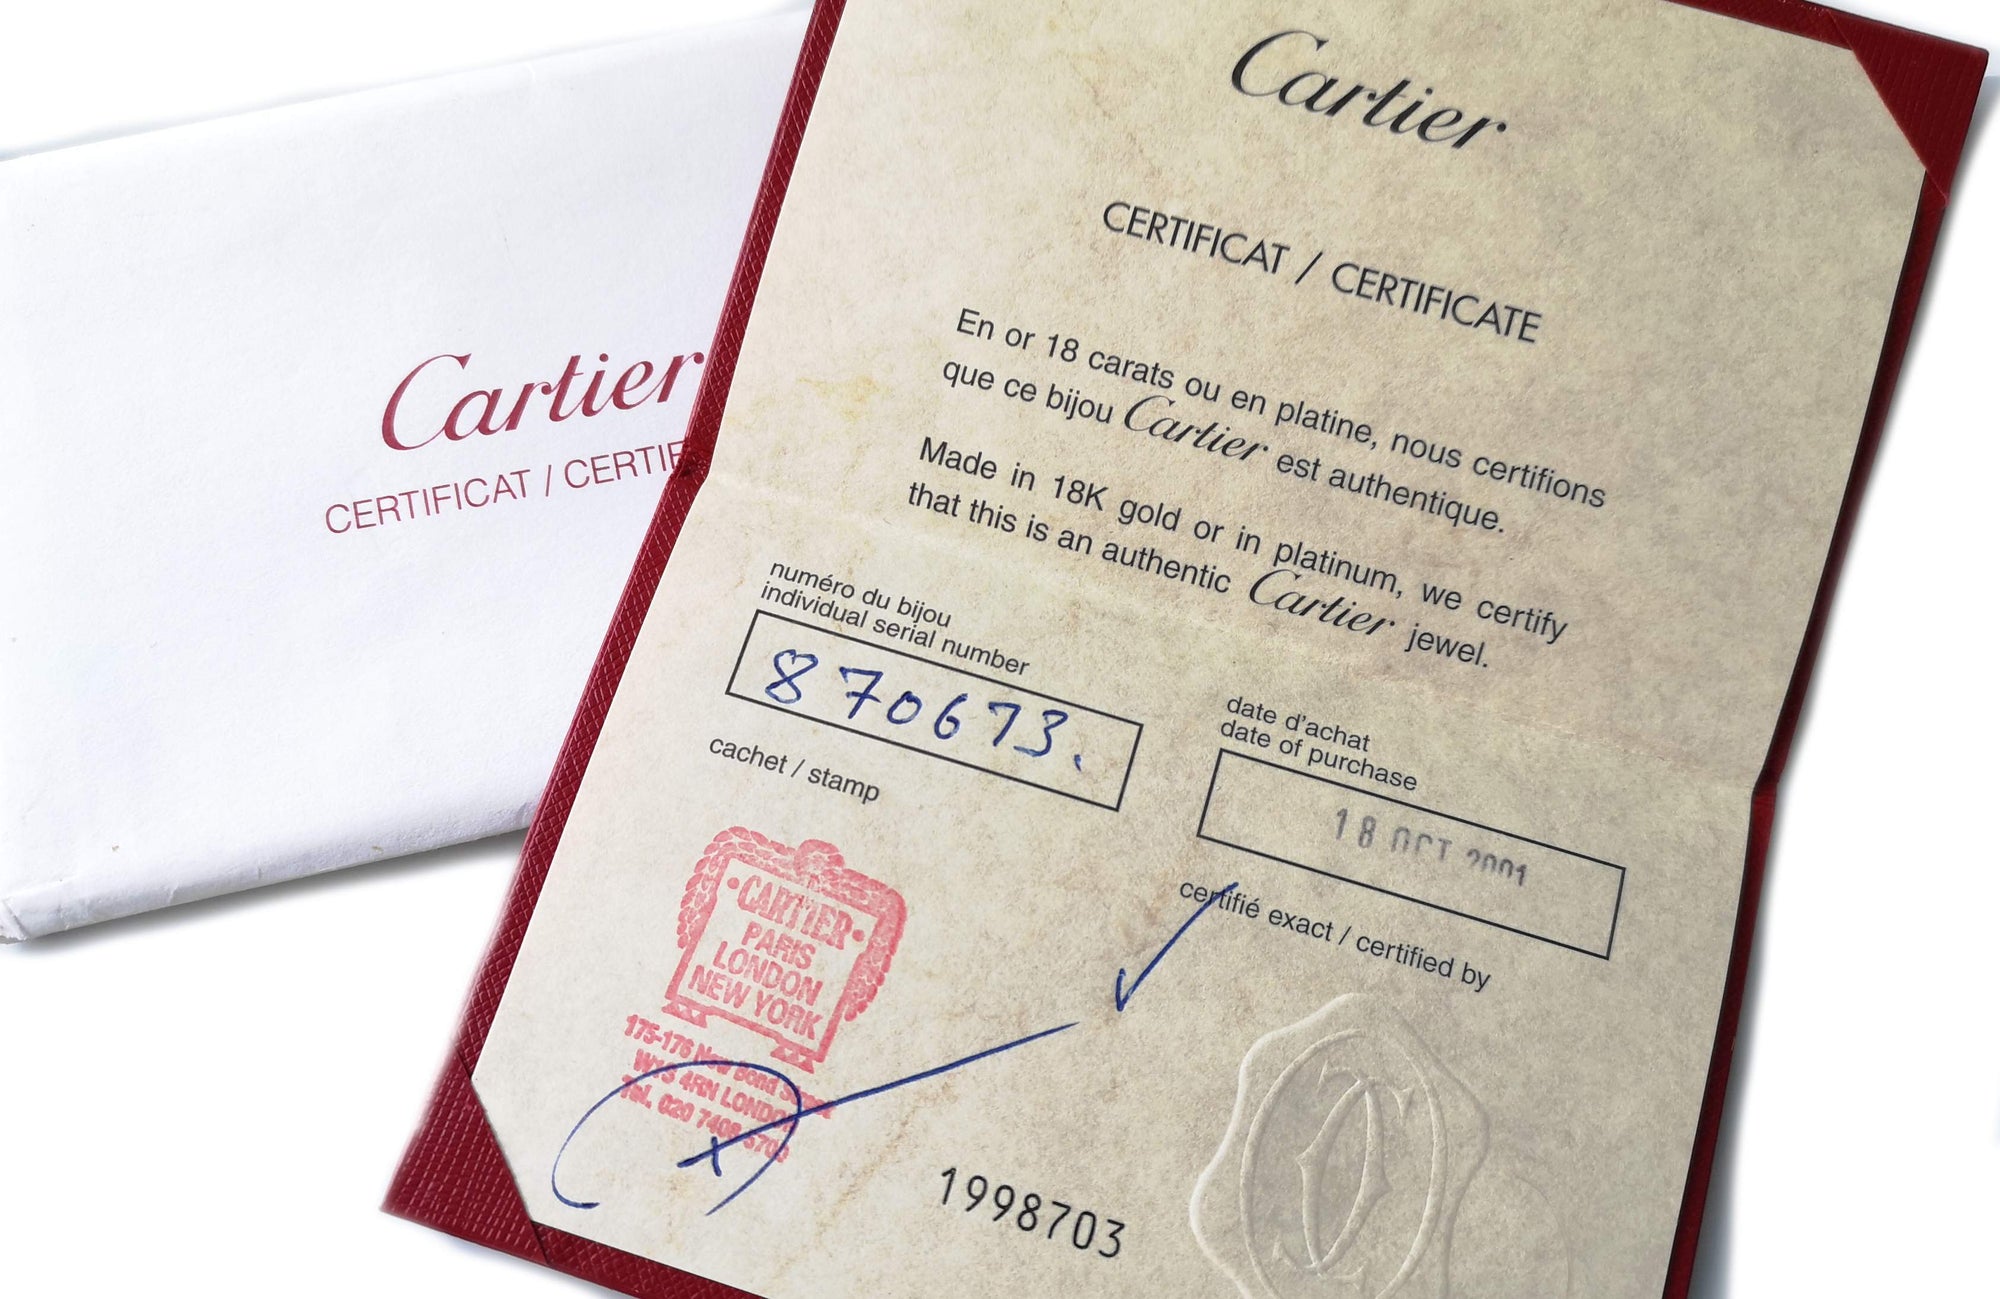 Cartier C De 18k White Gold Necklace Certificate 2001